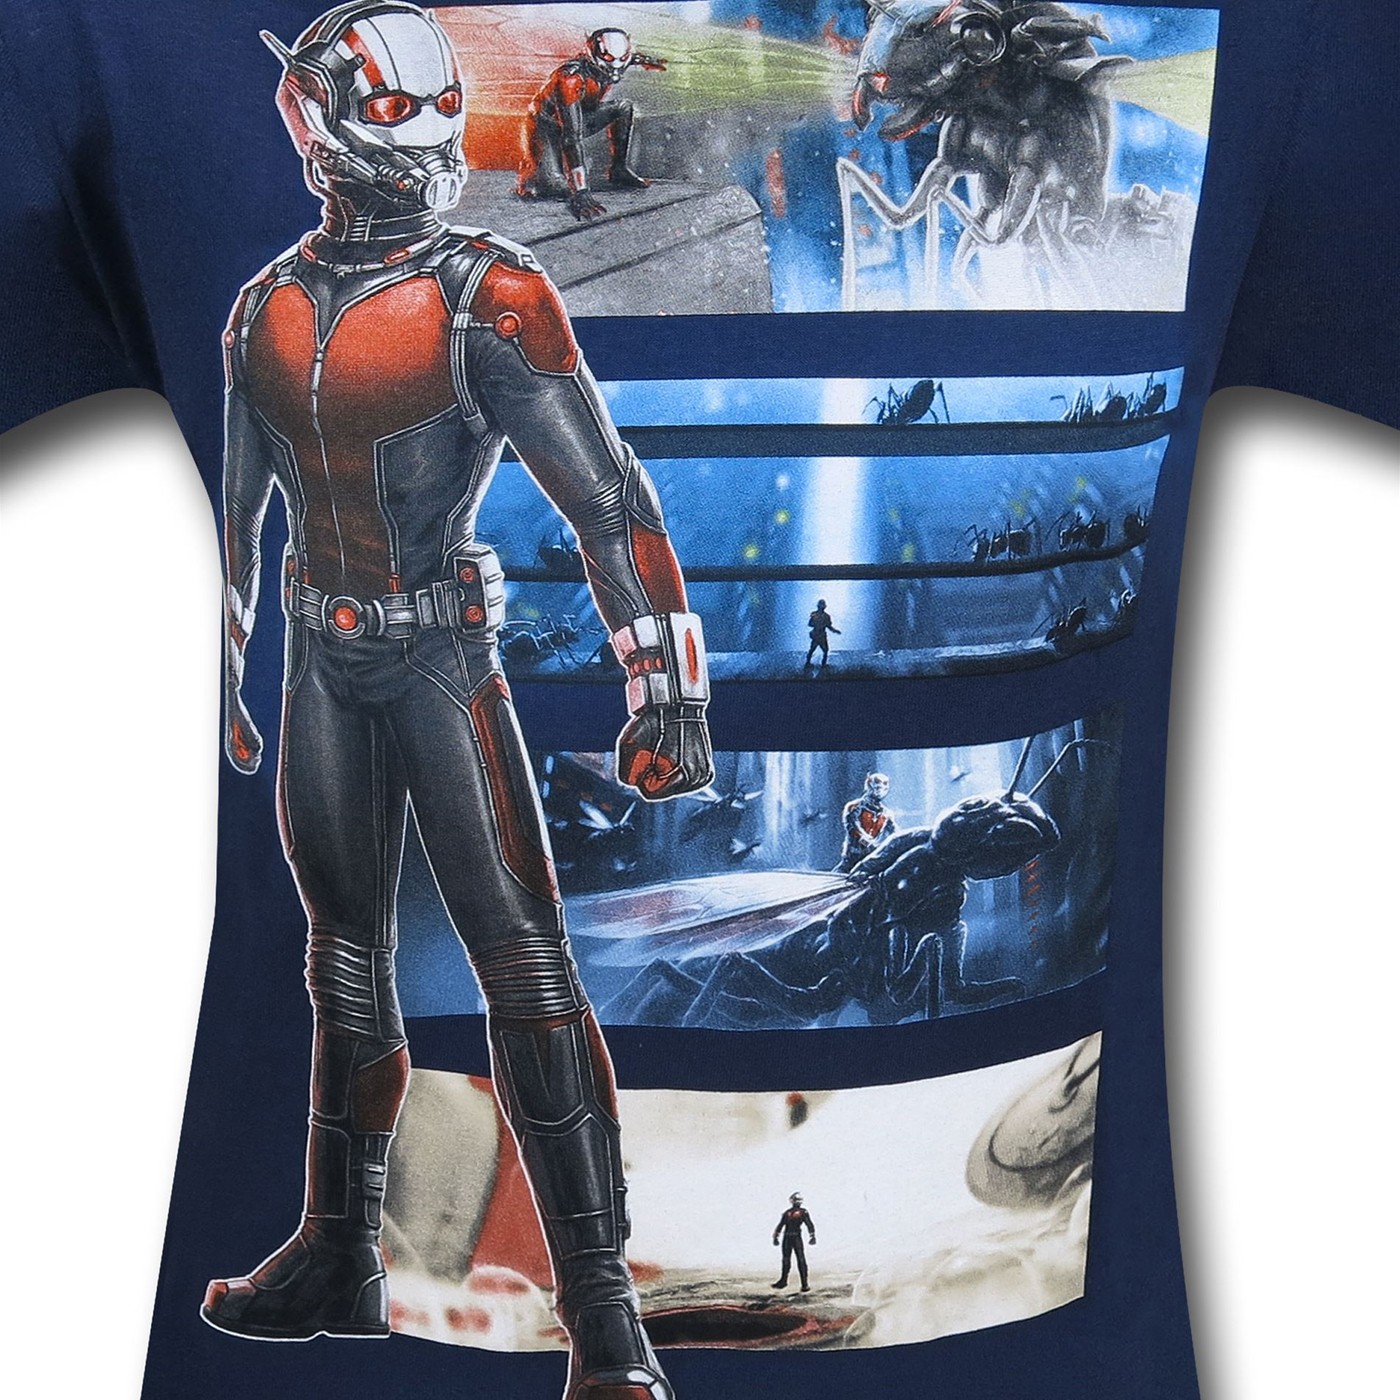 Ant-Man Movie Bars T-Shirt